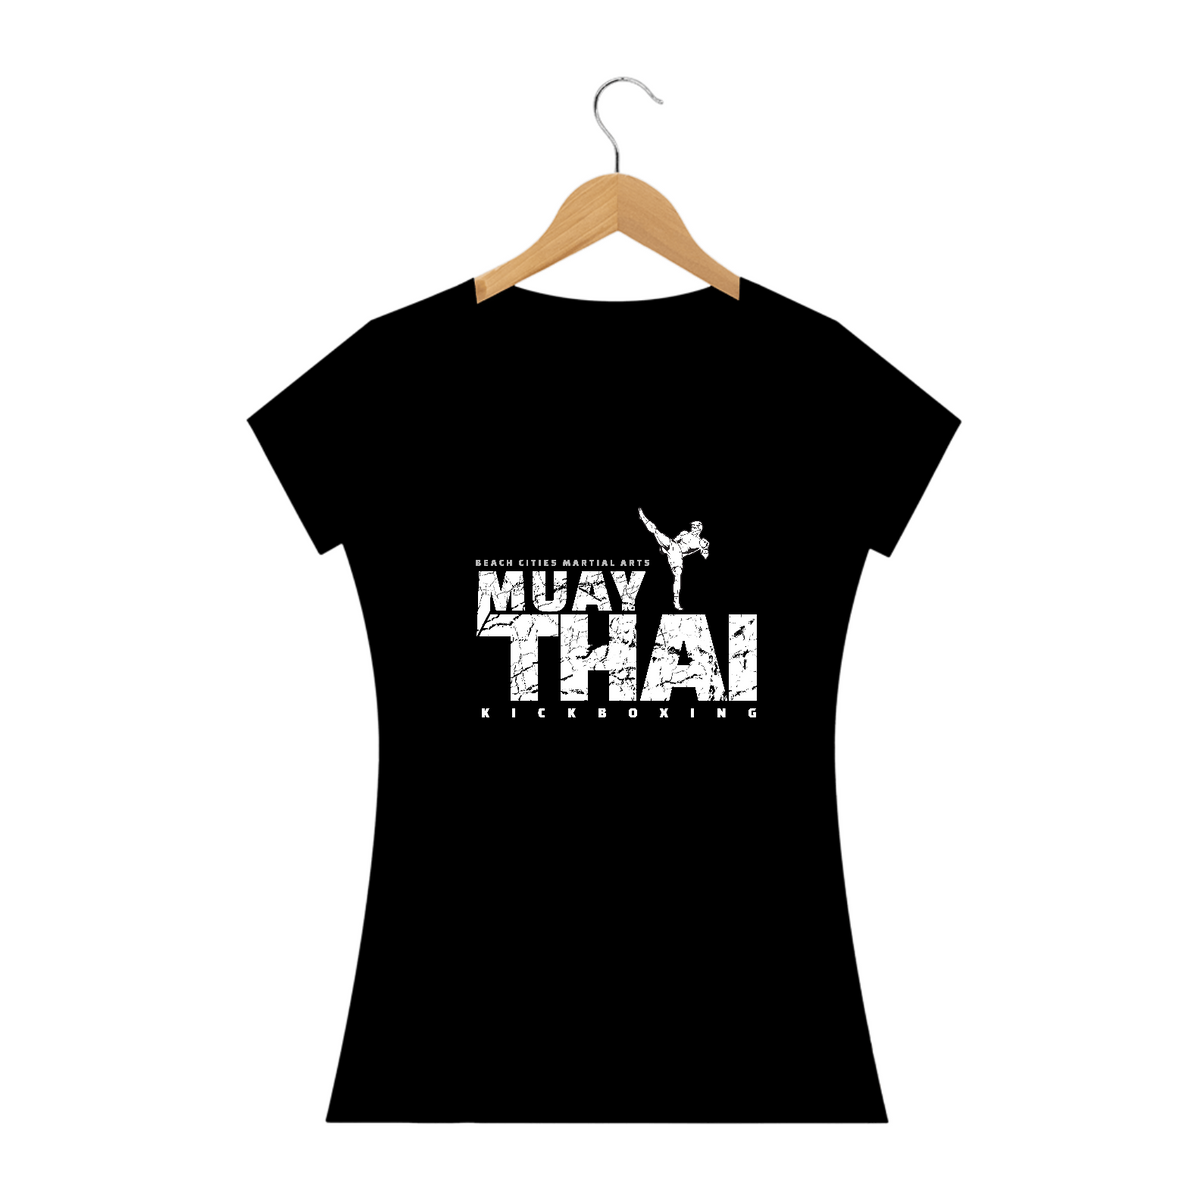 Nome do produto: Guarde o golpe, vista a determinação: Camisetas Feminina Muay Thai para mulheres que lutam com estilo!